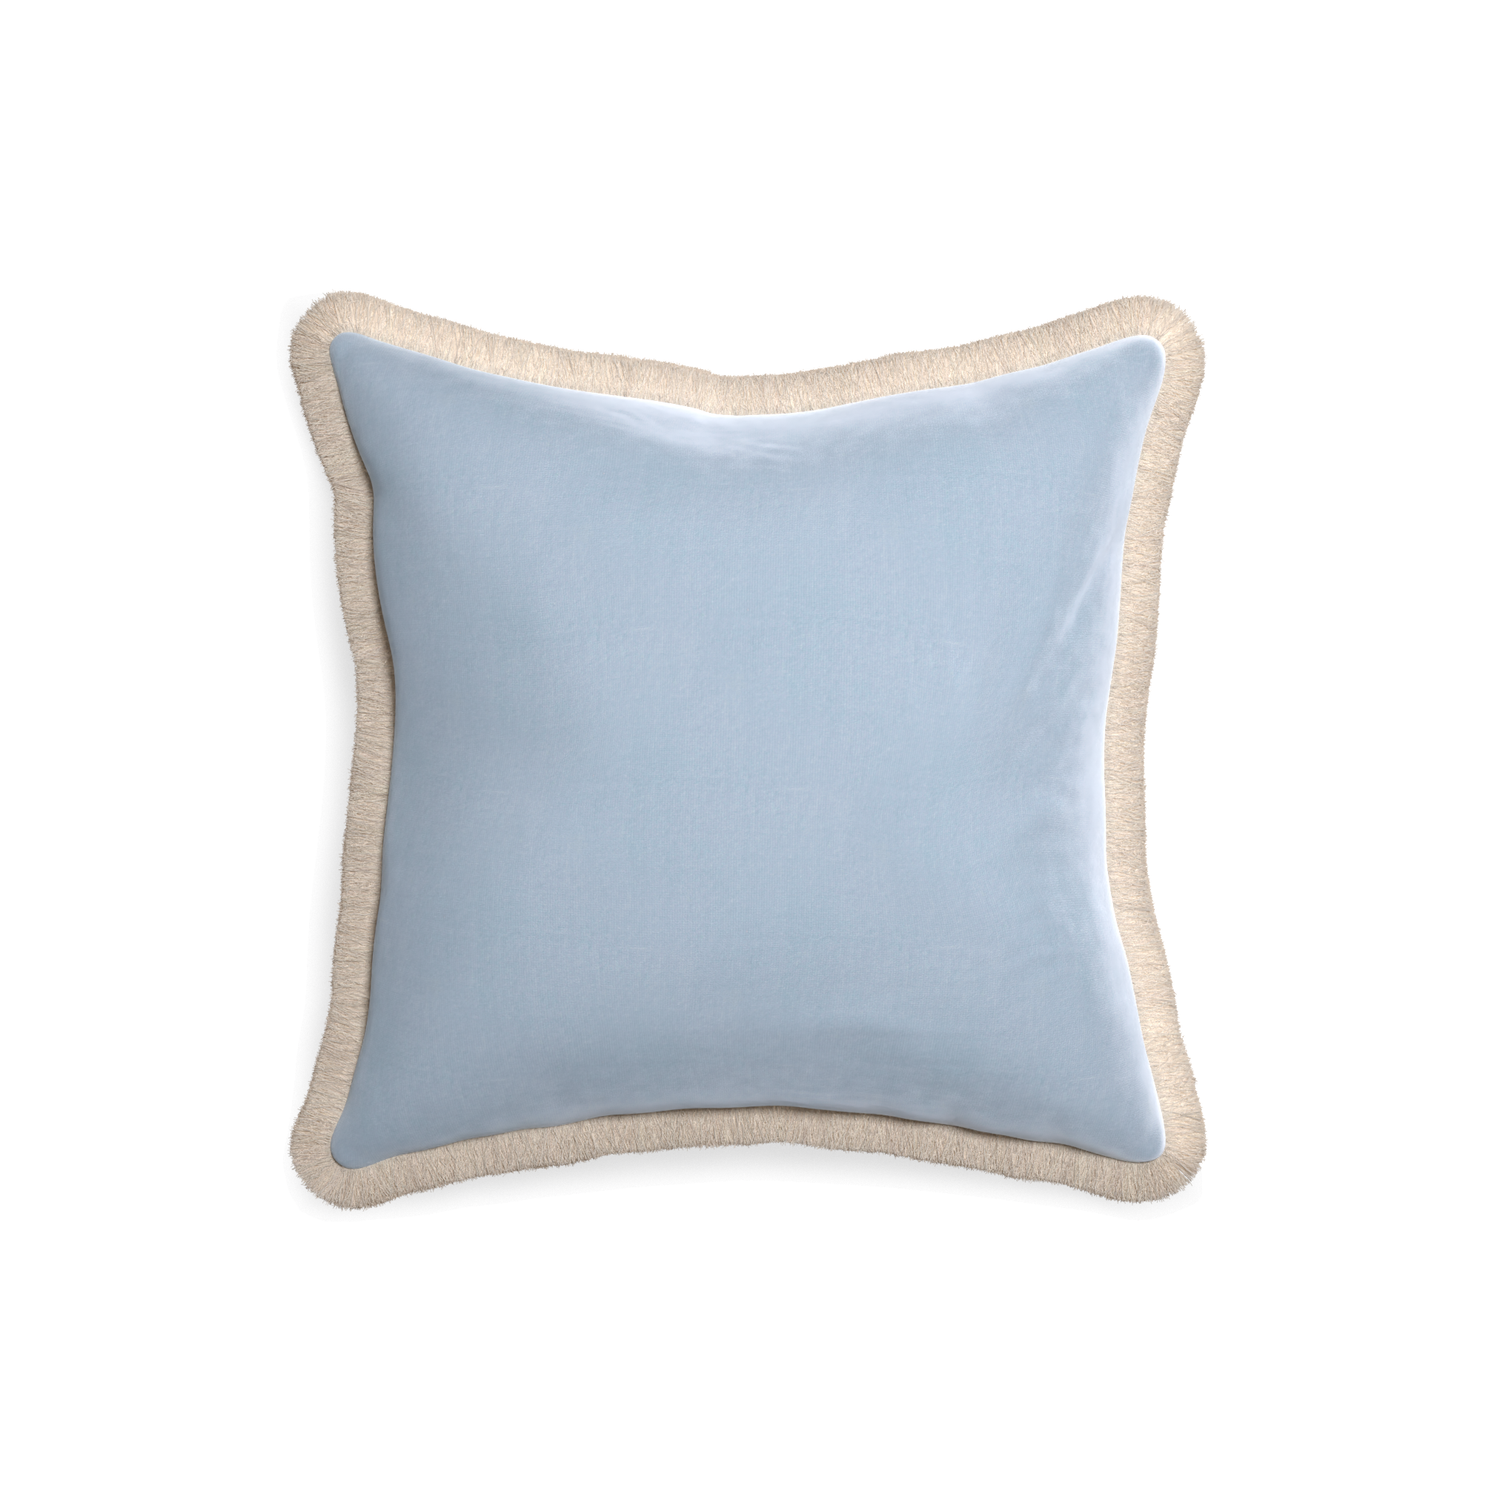 square light blue velvet pillow with cream fringe